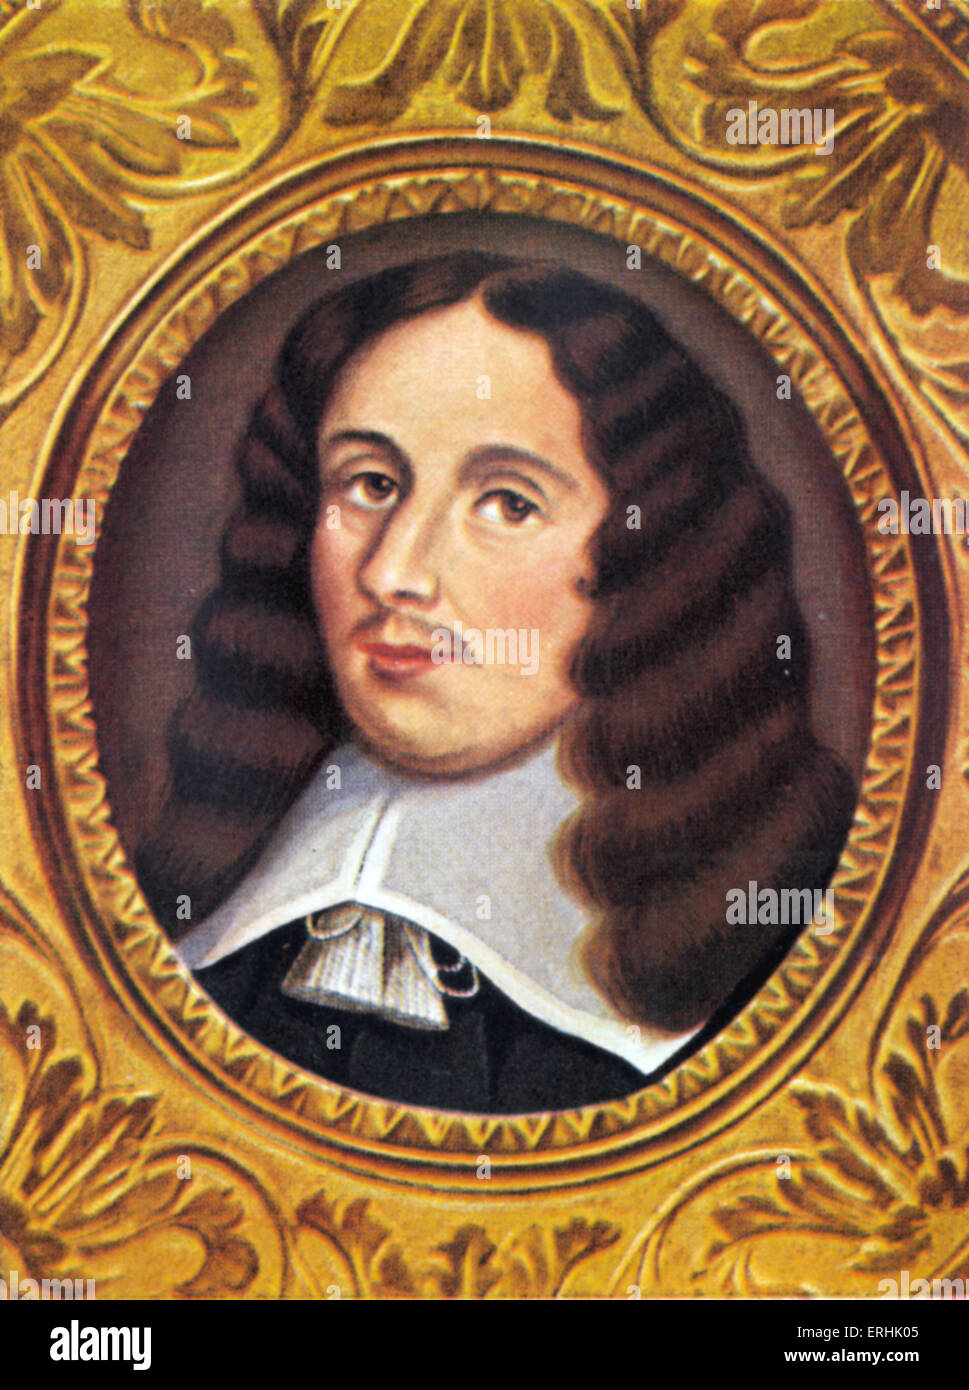 Molière Jean-Baptiste Poquelin né. Portrait de l'écrivain de théâtre français, réalisateur et acteur, l'un des maîtres de la bande dessinée Banque D'Images